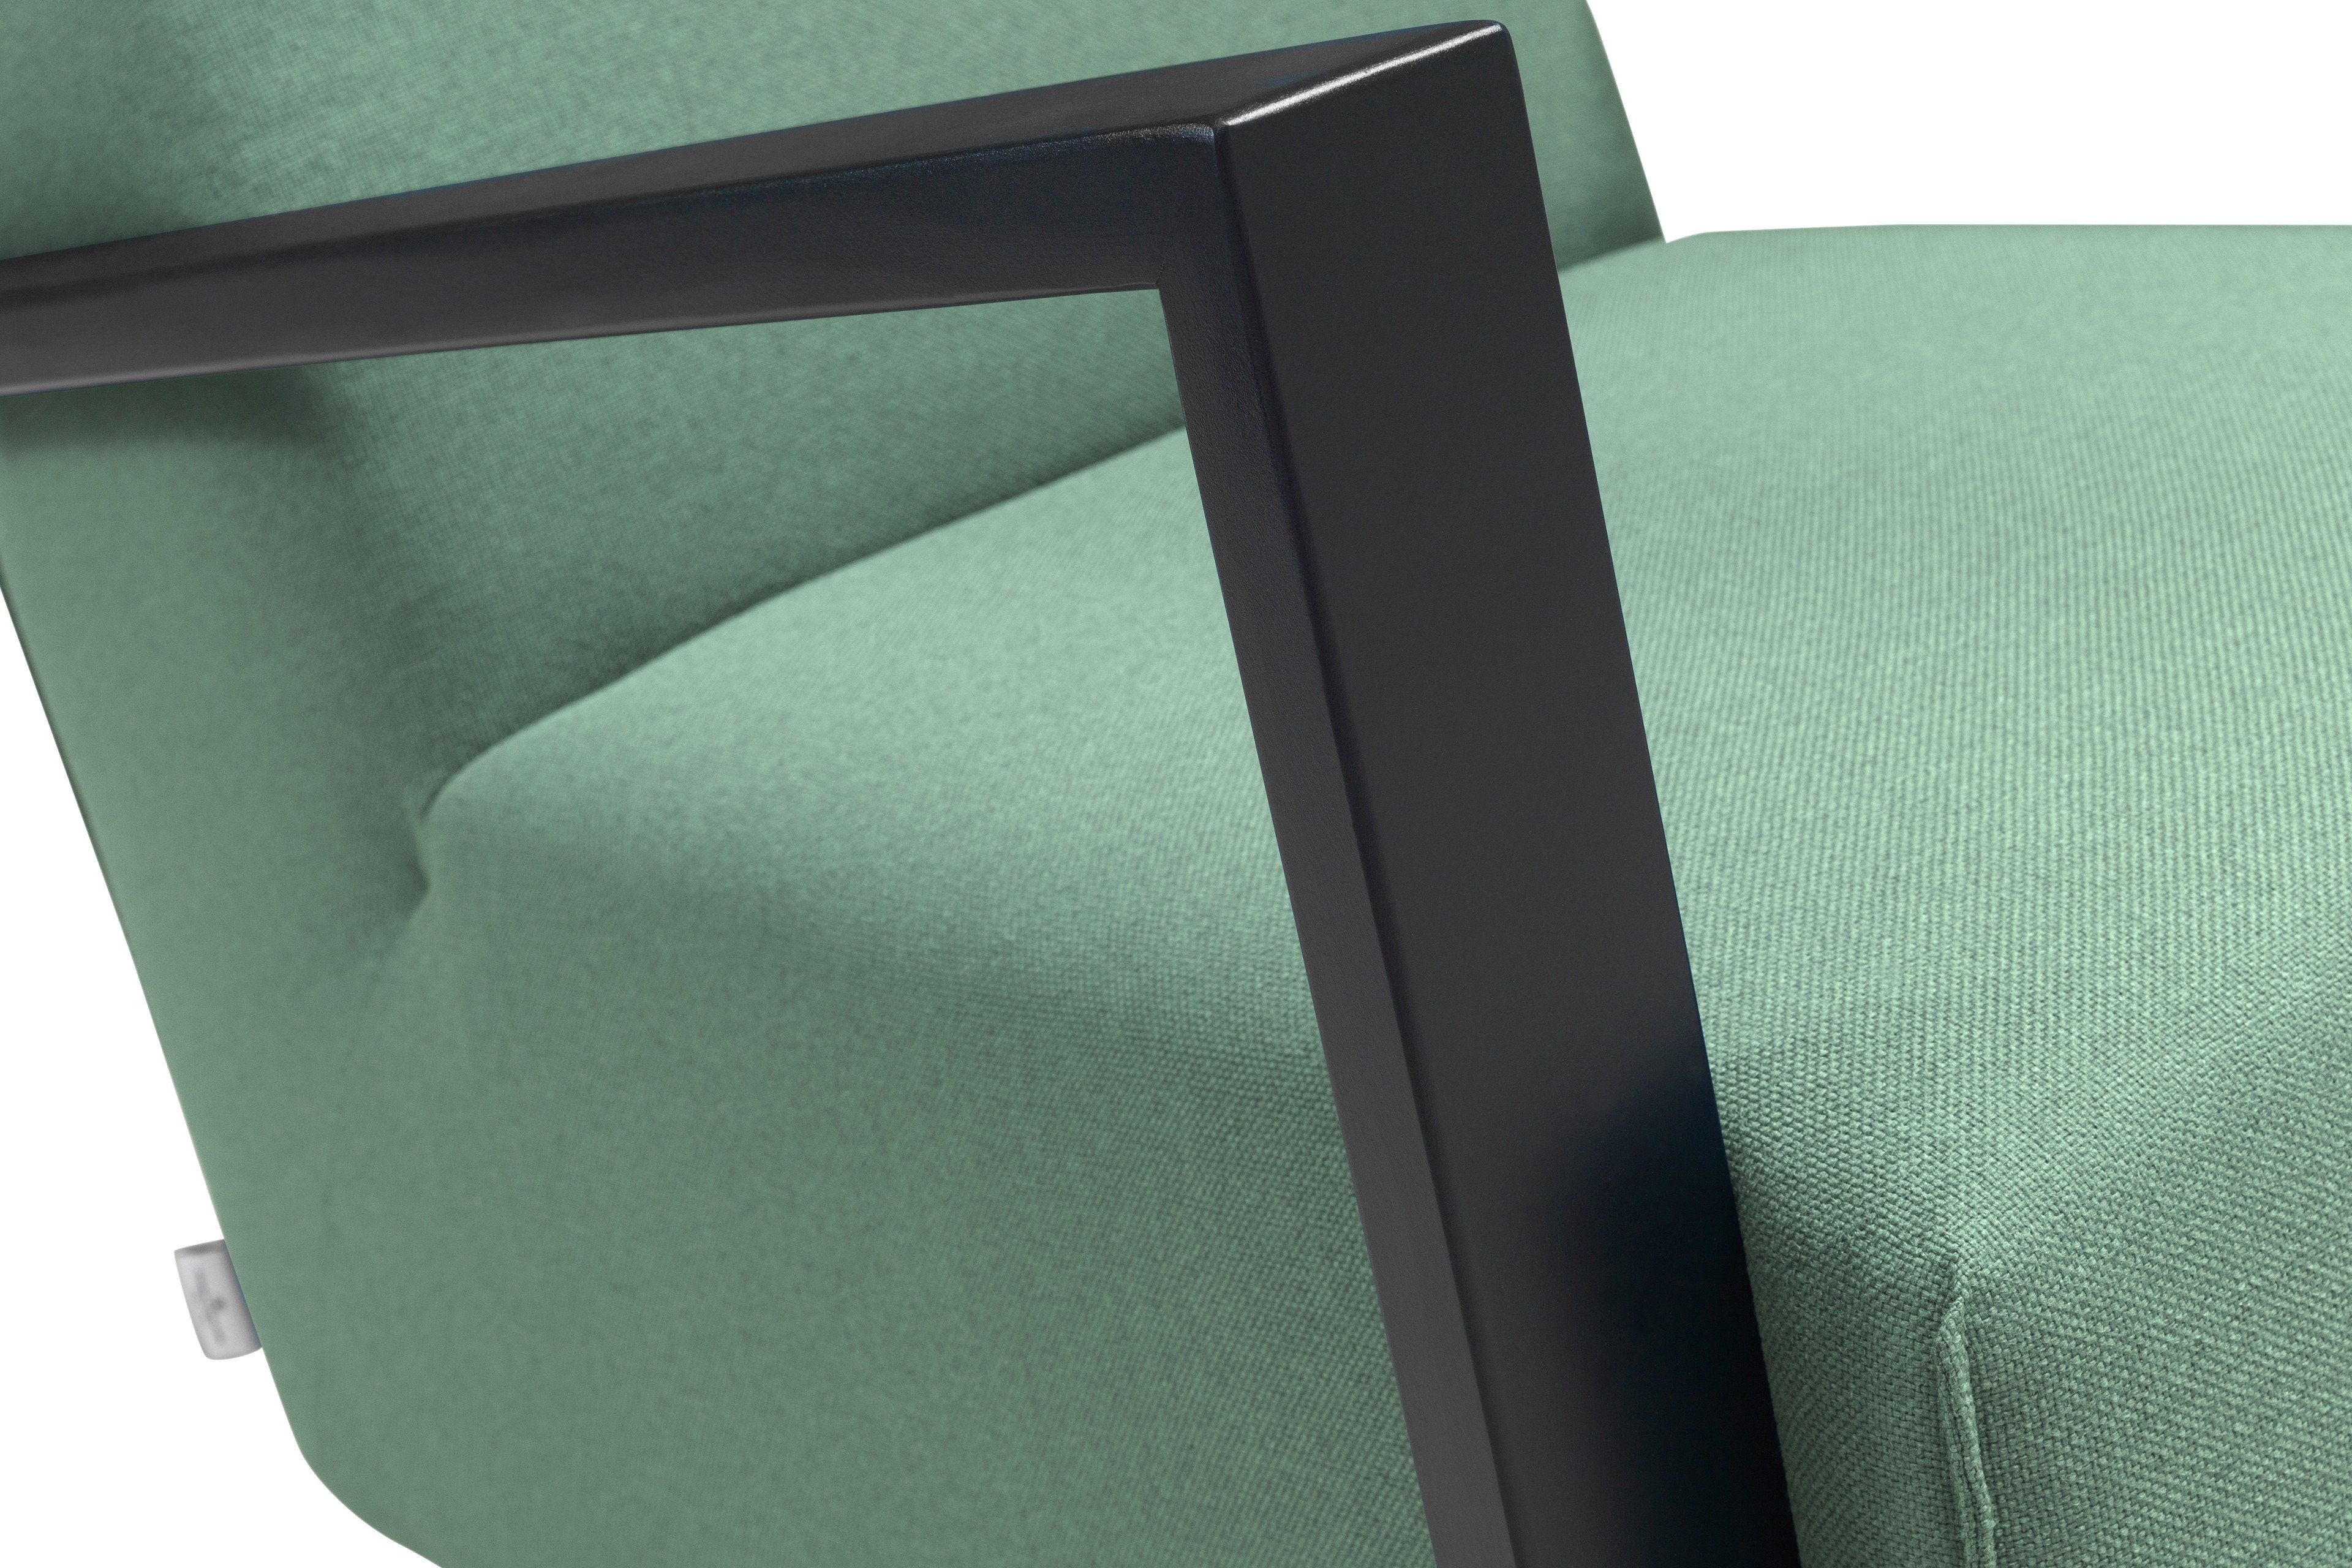 Tom Tailor Lazy 9205 Sessel mint | Möbel Letz - Ihr Online-Shop